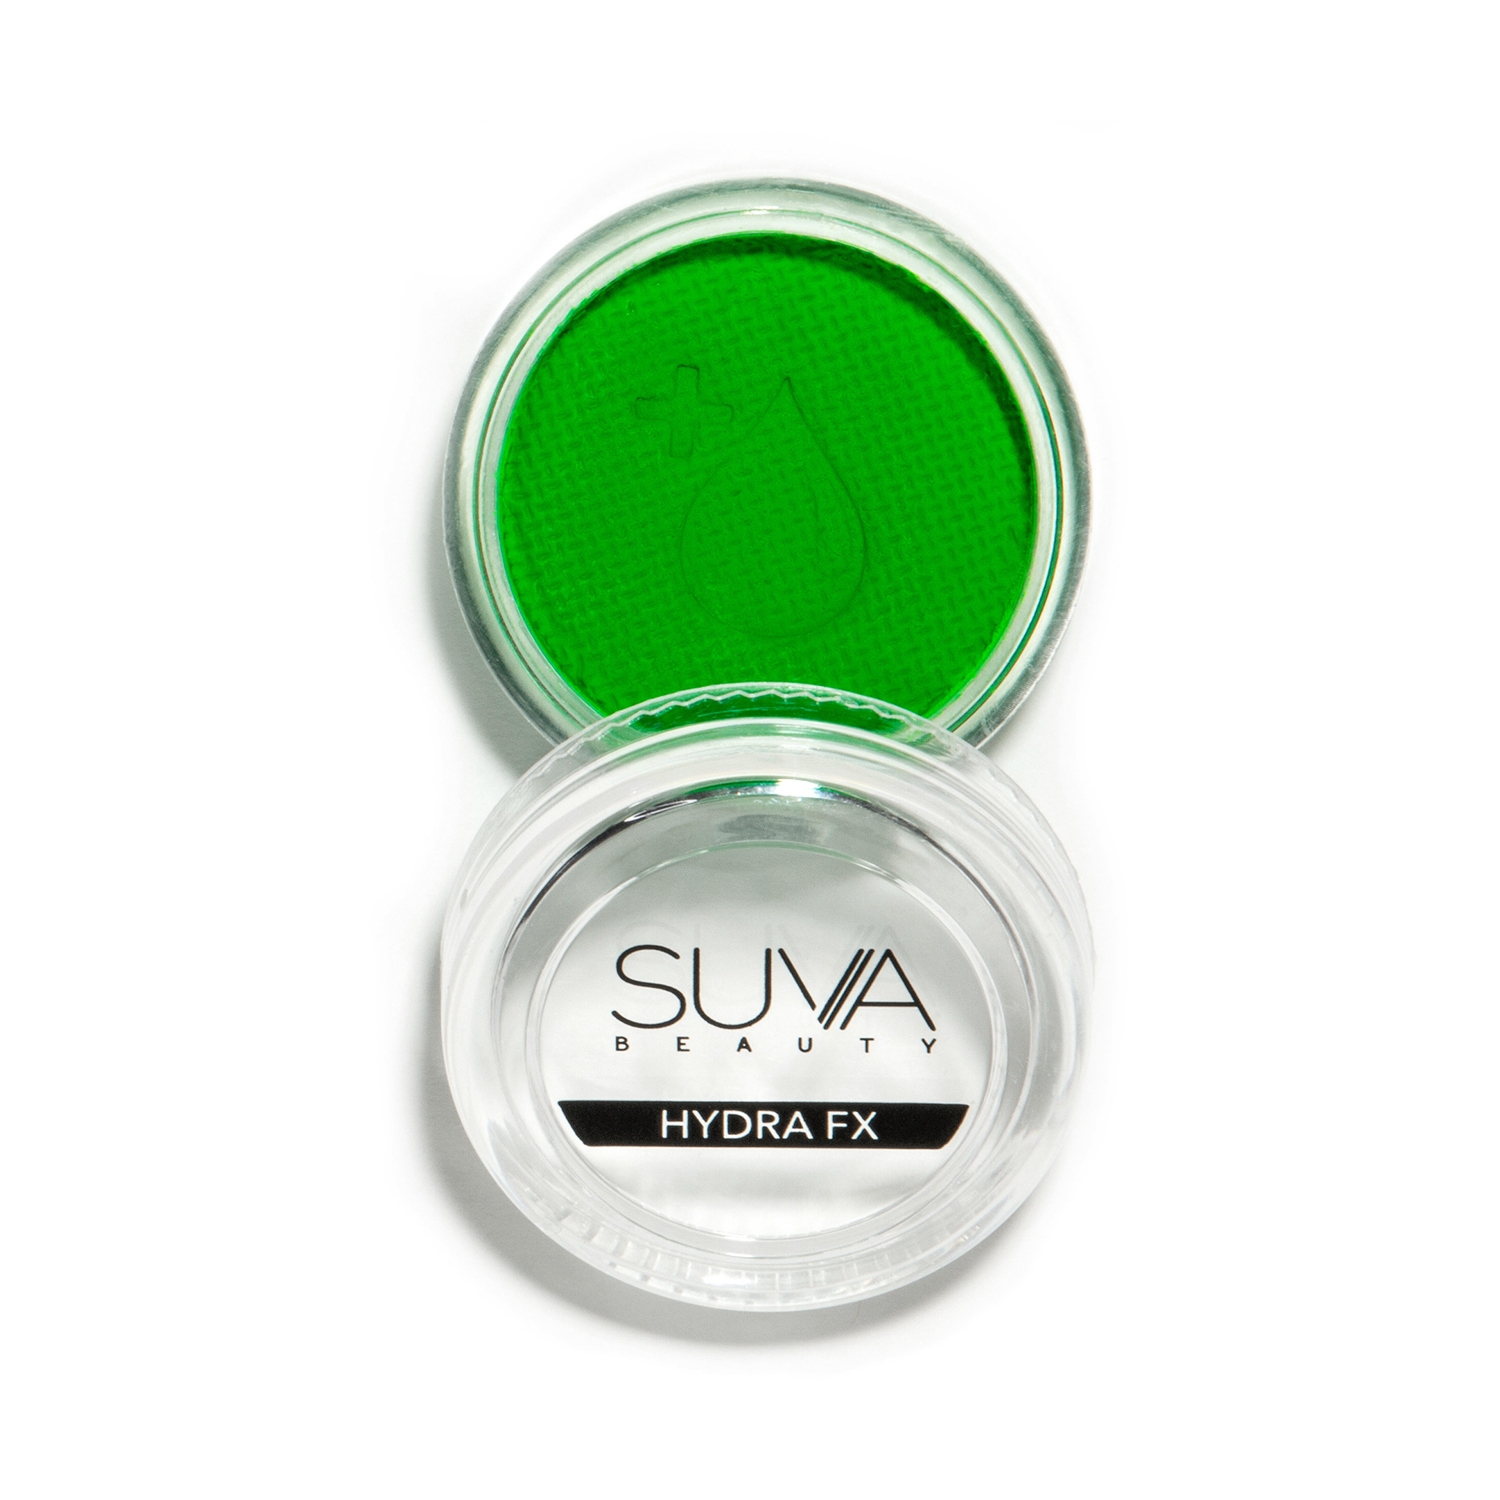 SUVA Beauty | SUVA Beauty Hydra FX Eyeliner - Fanny Pack (10g)